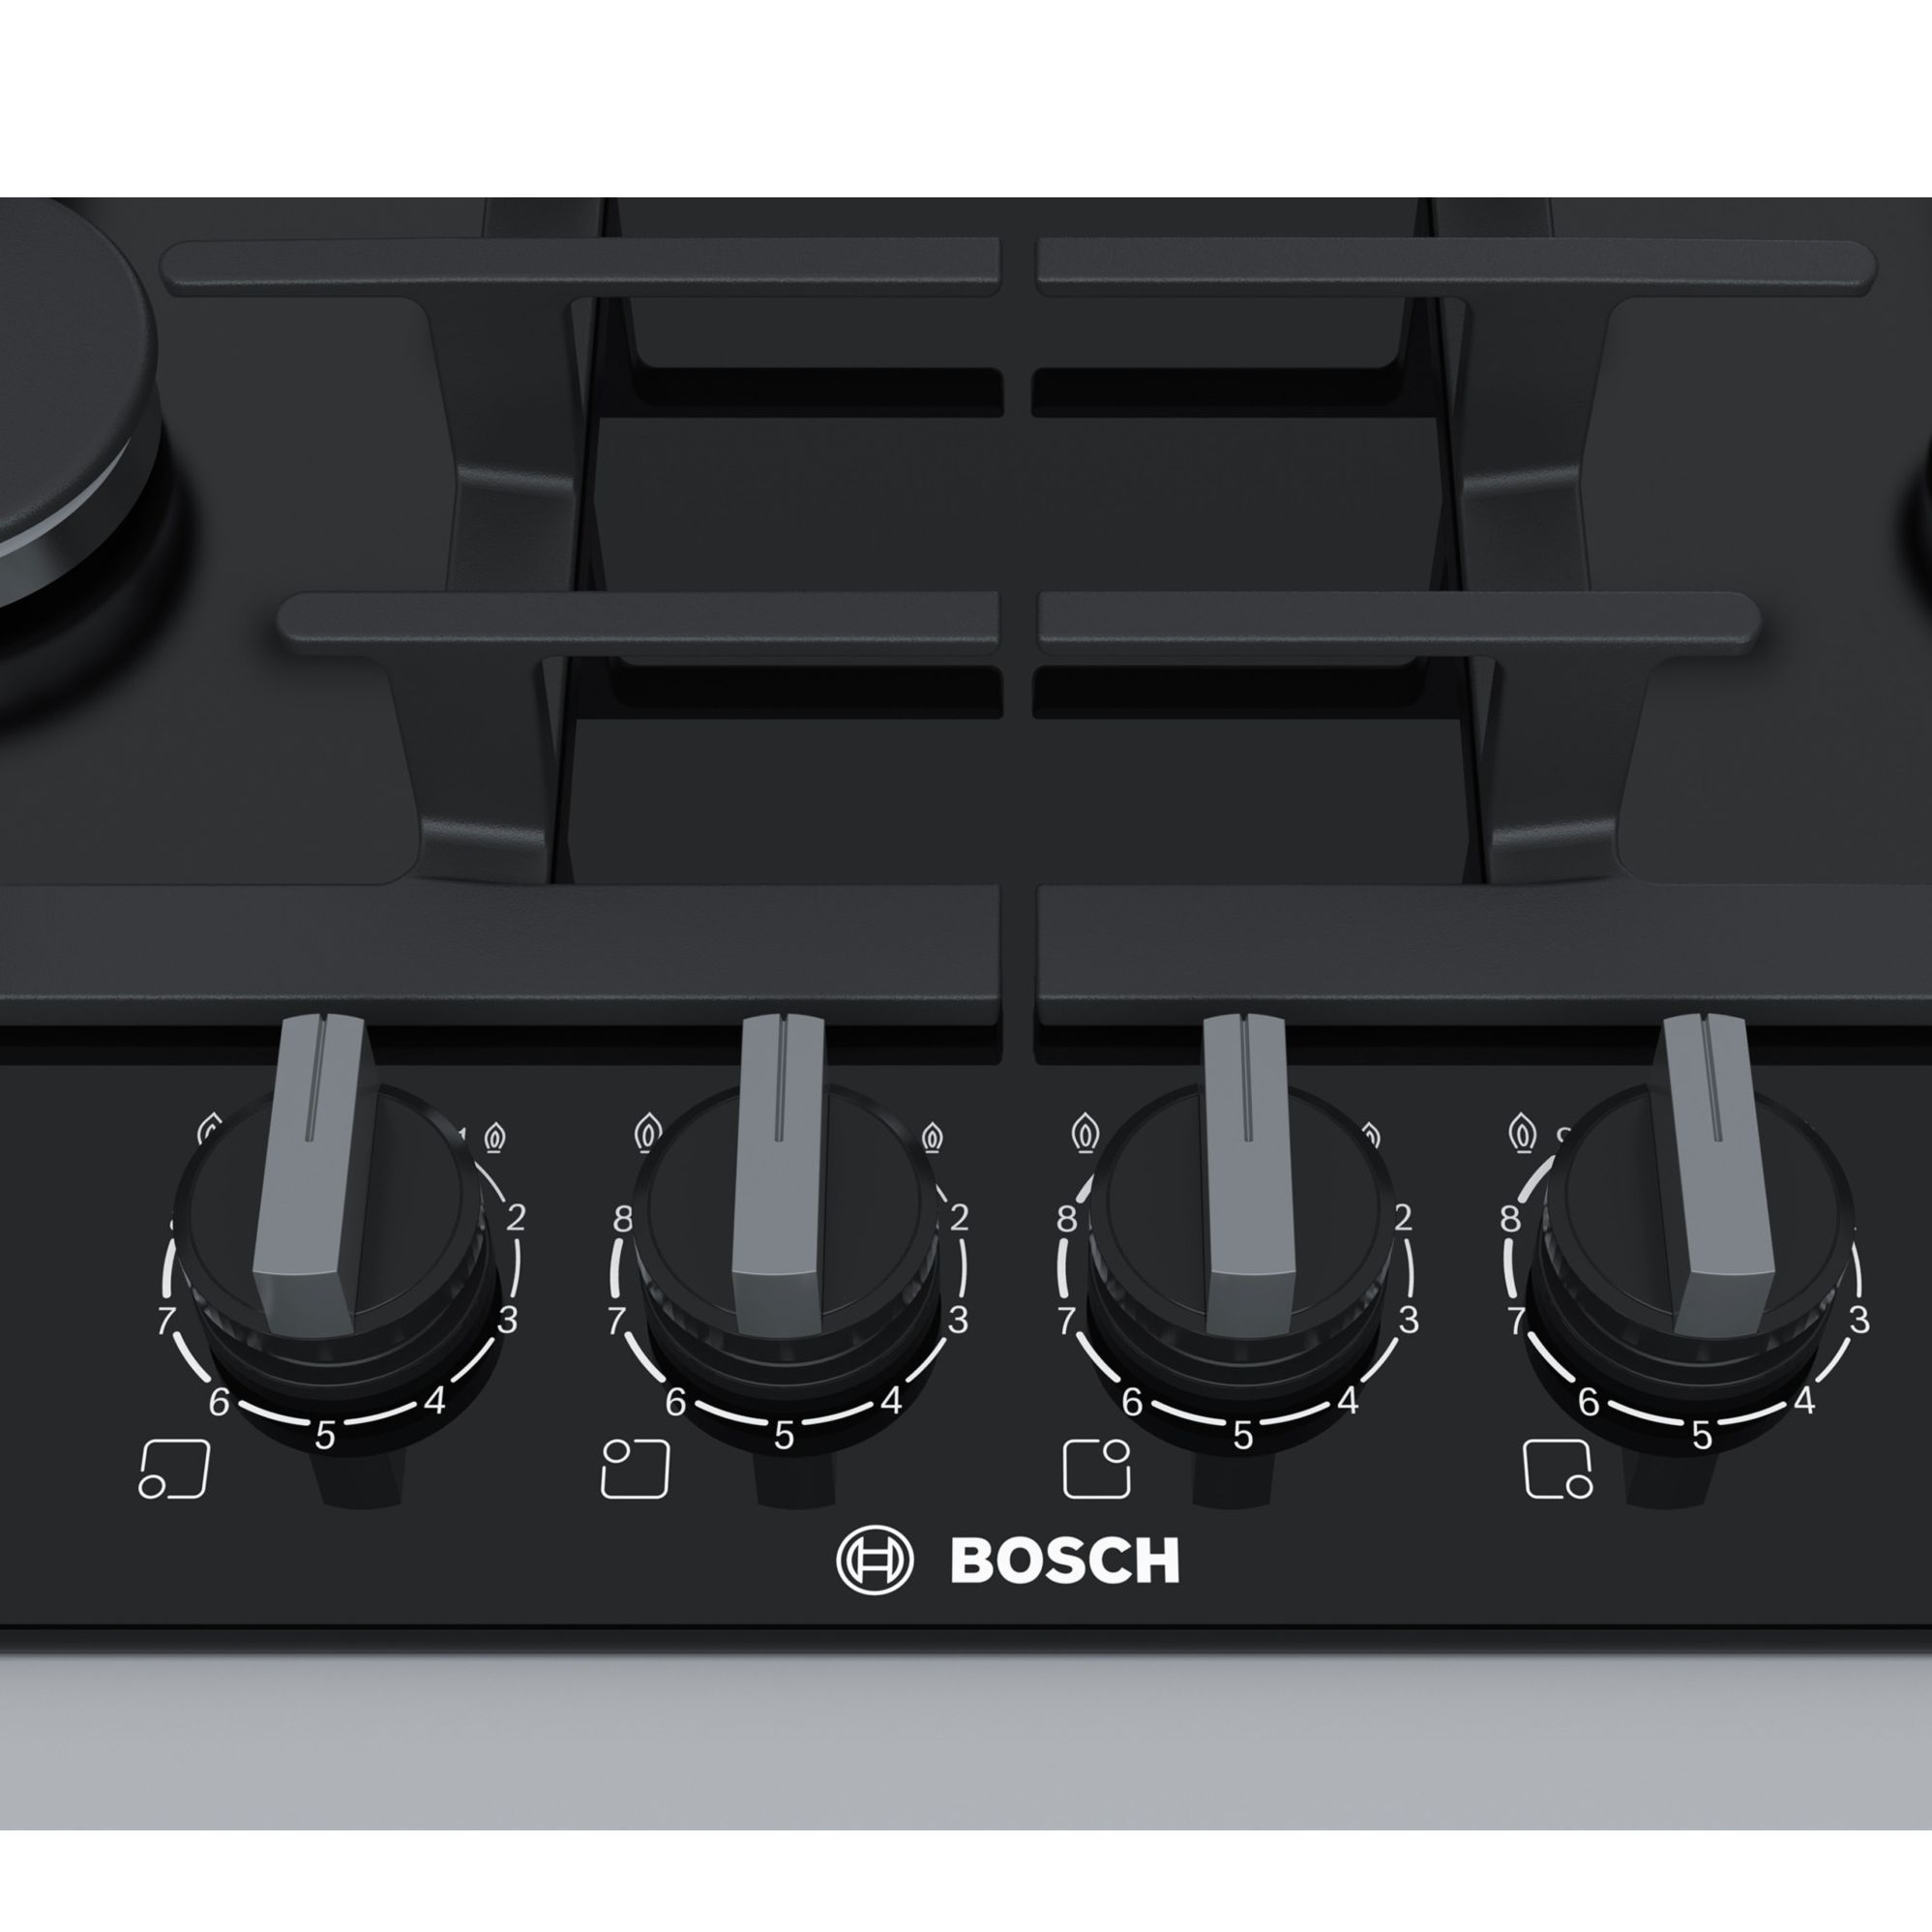 Bosch PPP6A6B90 59cm Gas Hob - Black